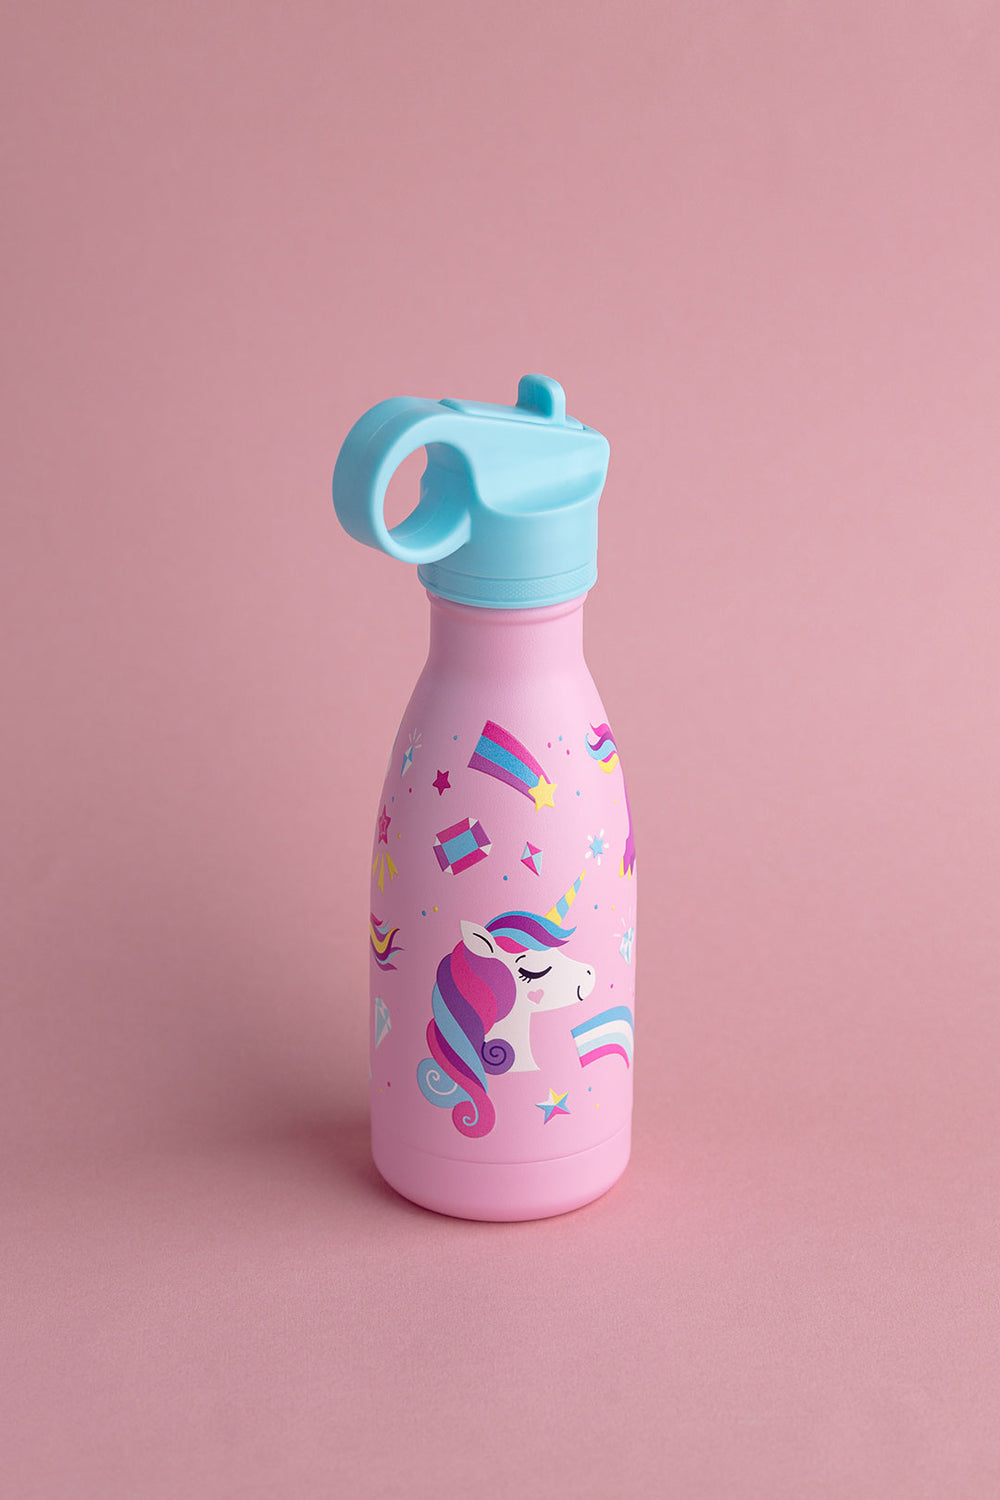 Personalised Unicorn Water Bottle, School Water Bottle, Gym Bottle